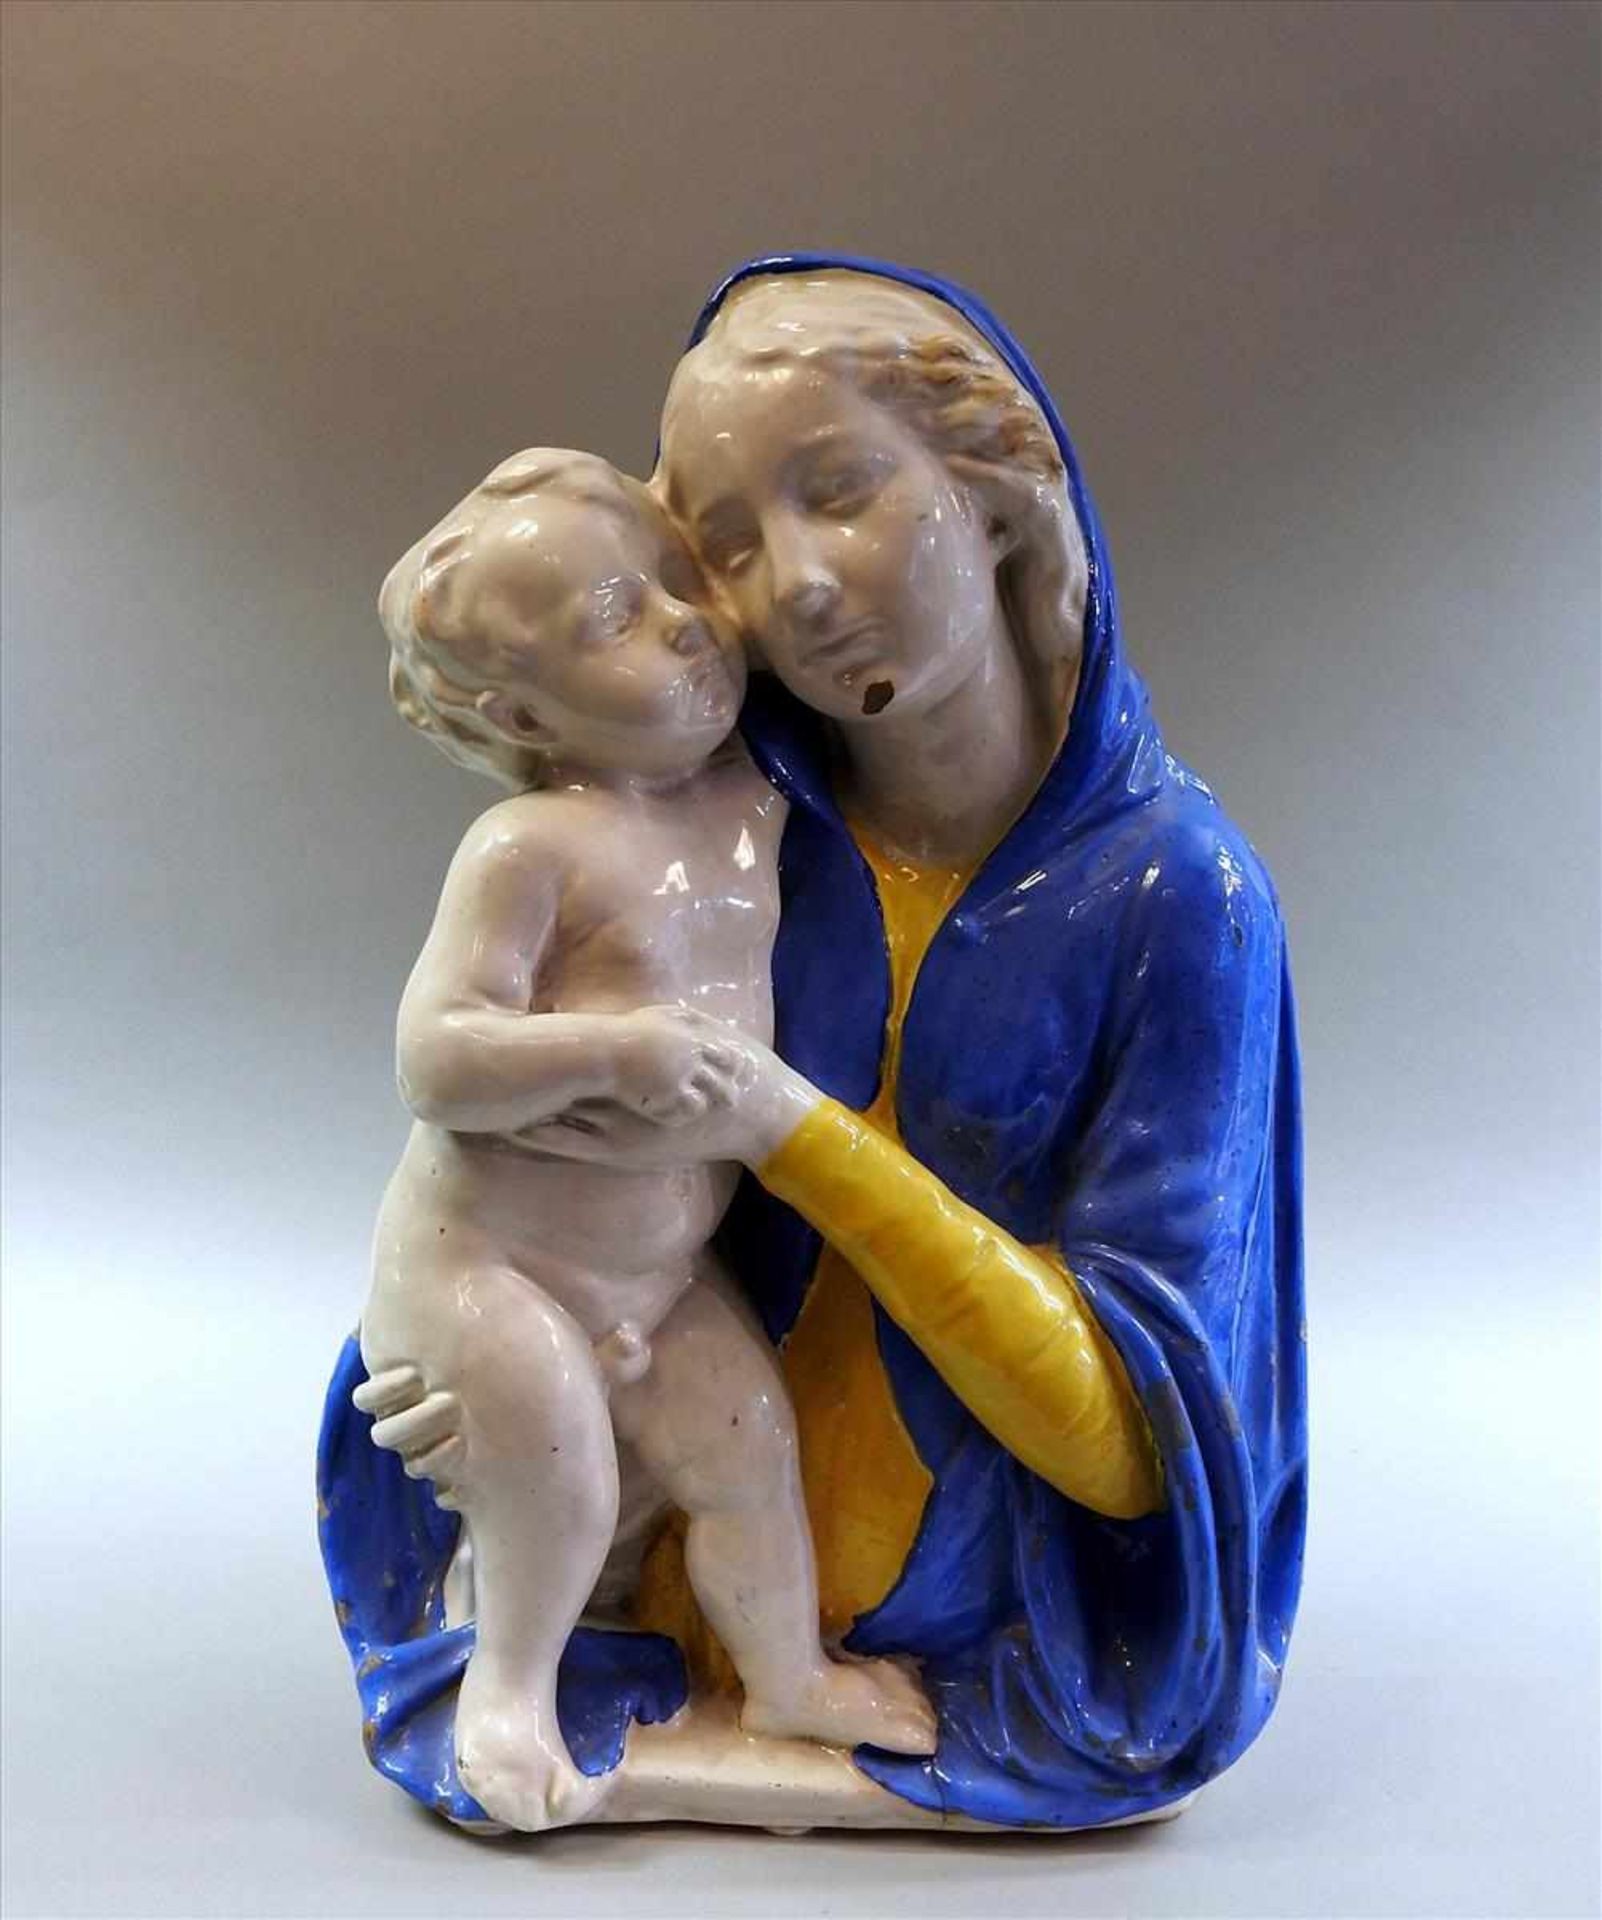 Maria mit Kind Terrakotta, farbig glasiert, mit verso bezeichnet. Am Kinn Farbabplatzer. Italien,